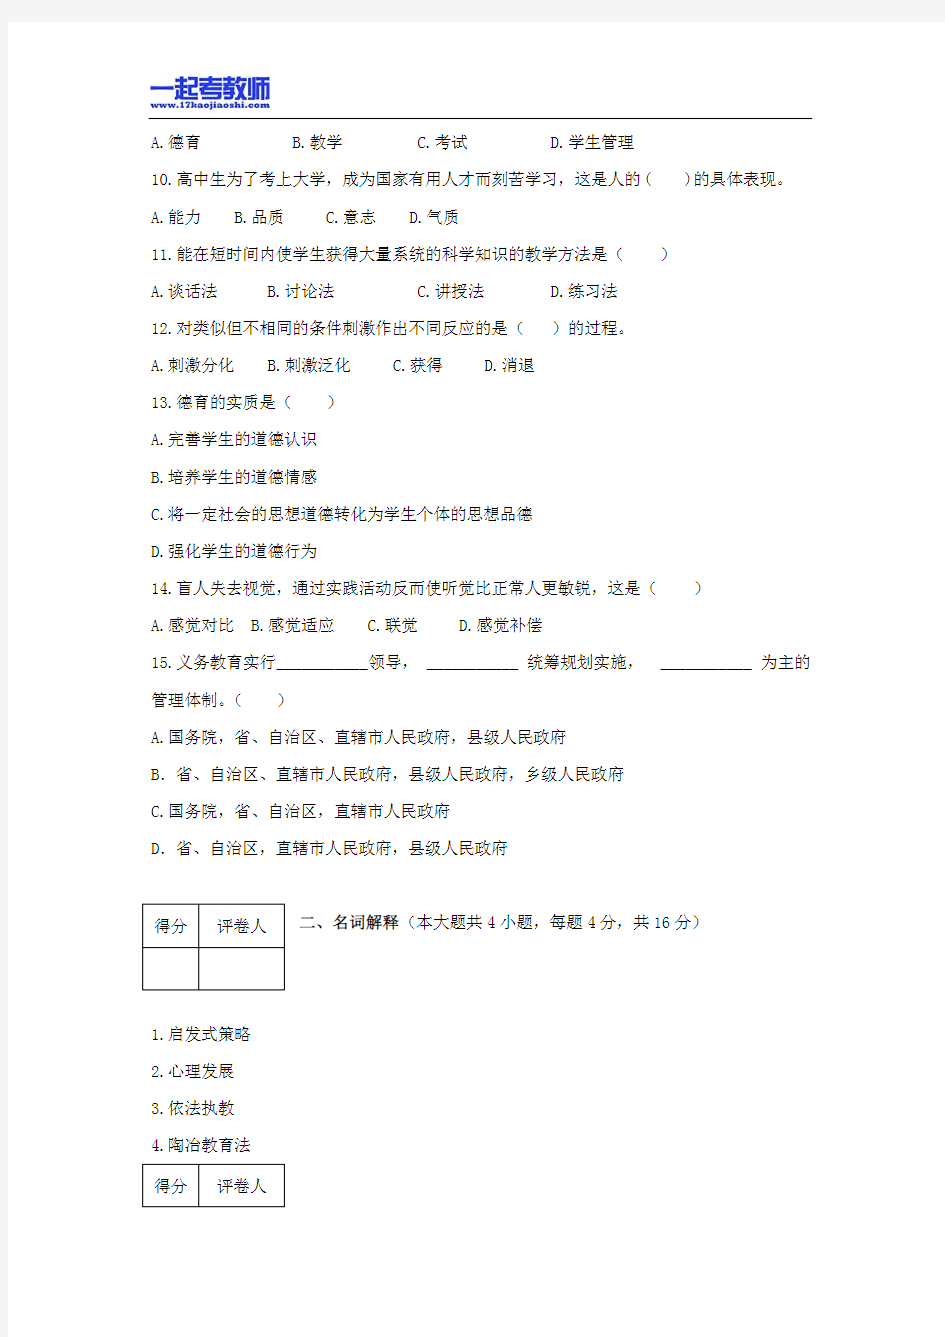 2011年深圳市教师招聘考试笔试教育综合真题答案解析